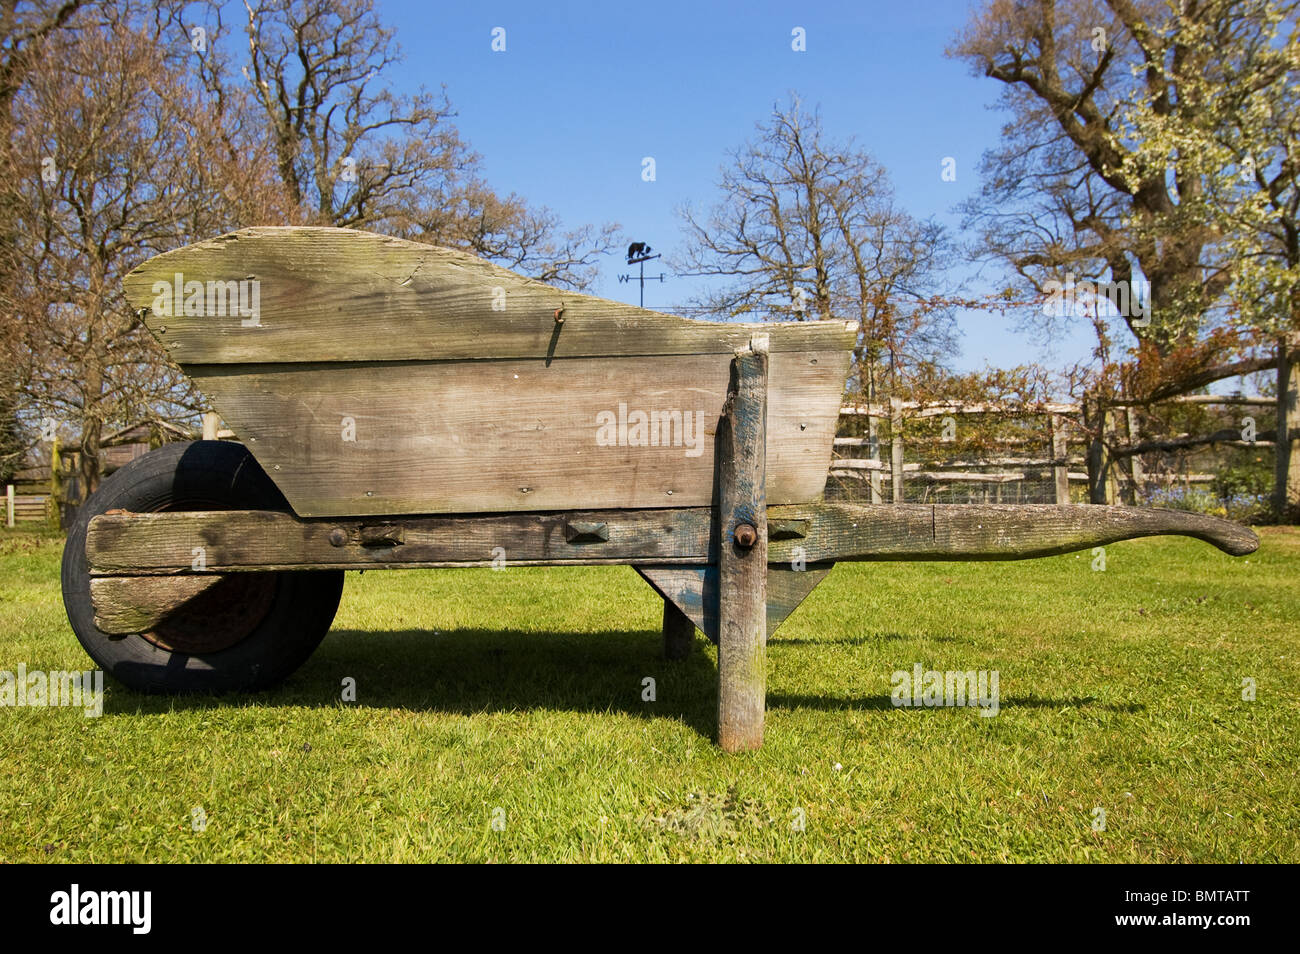 wooden wheelbarrow Stock Photo